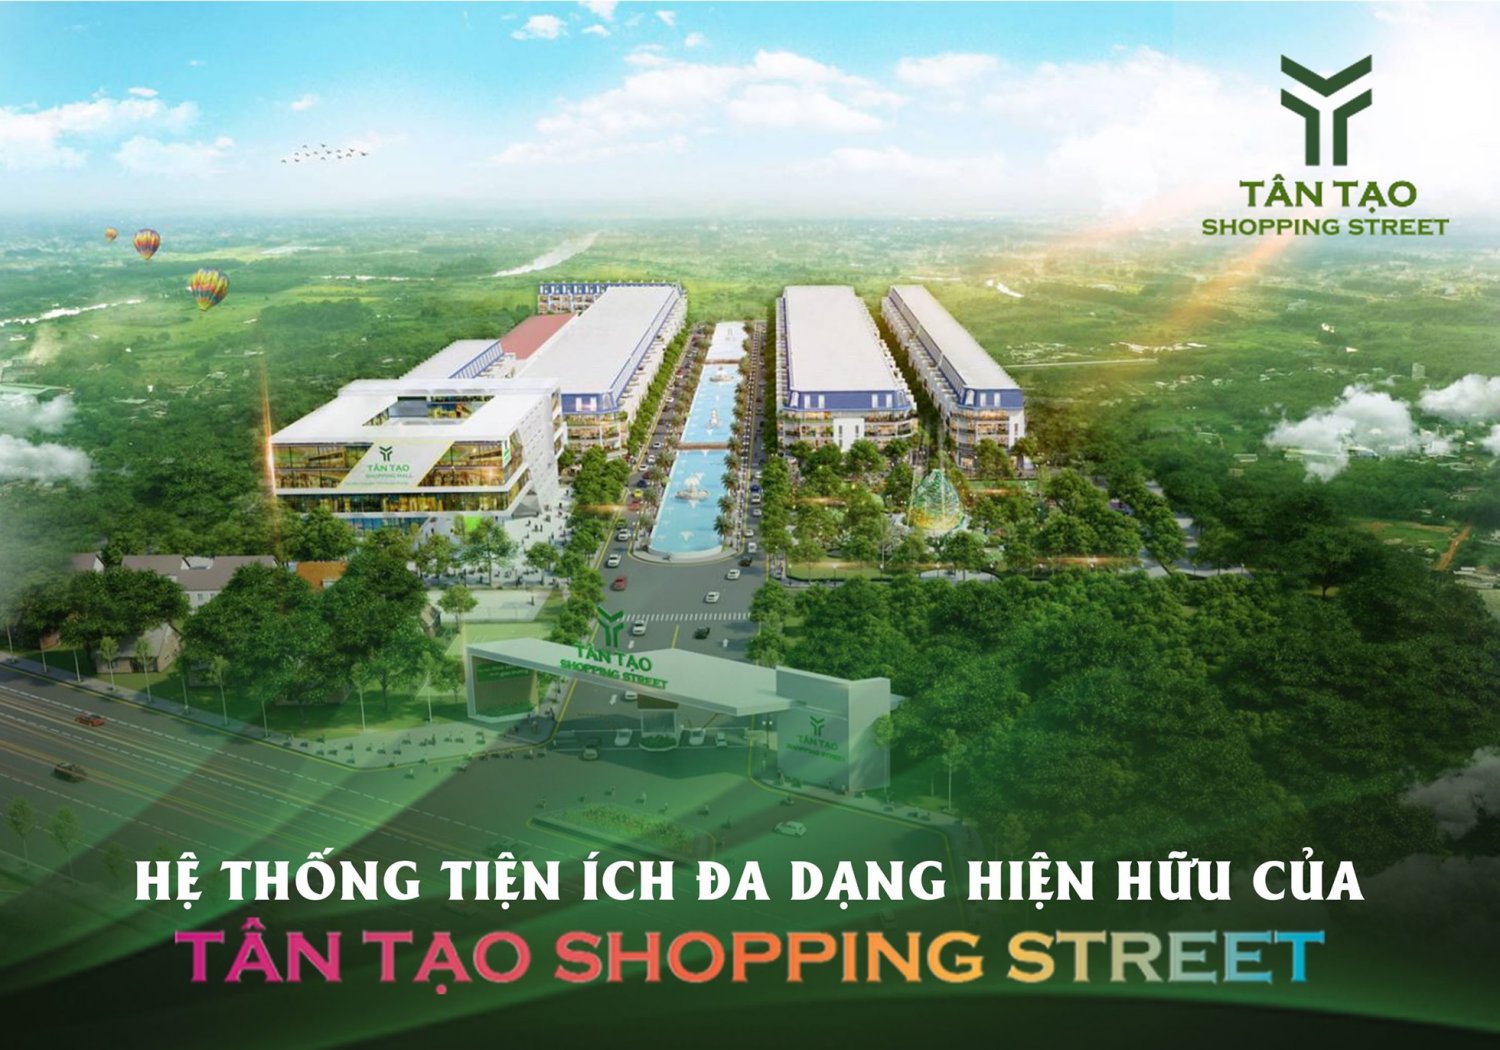 Tân Tạo Shopping Street